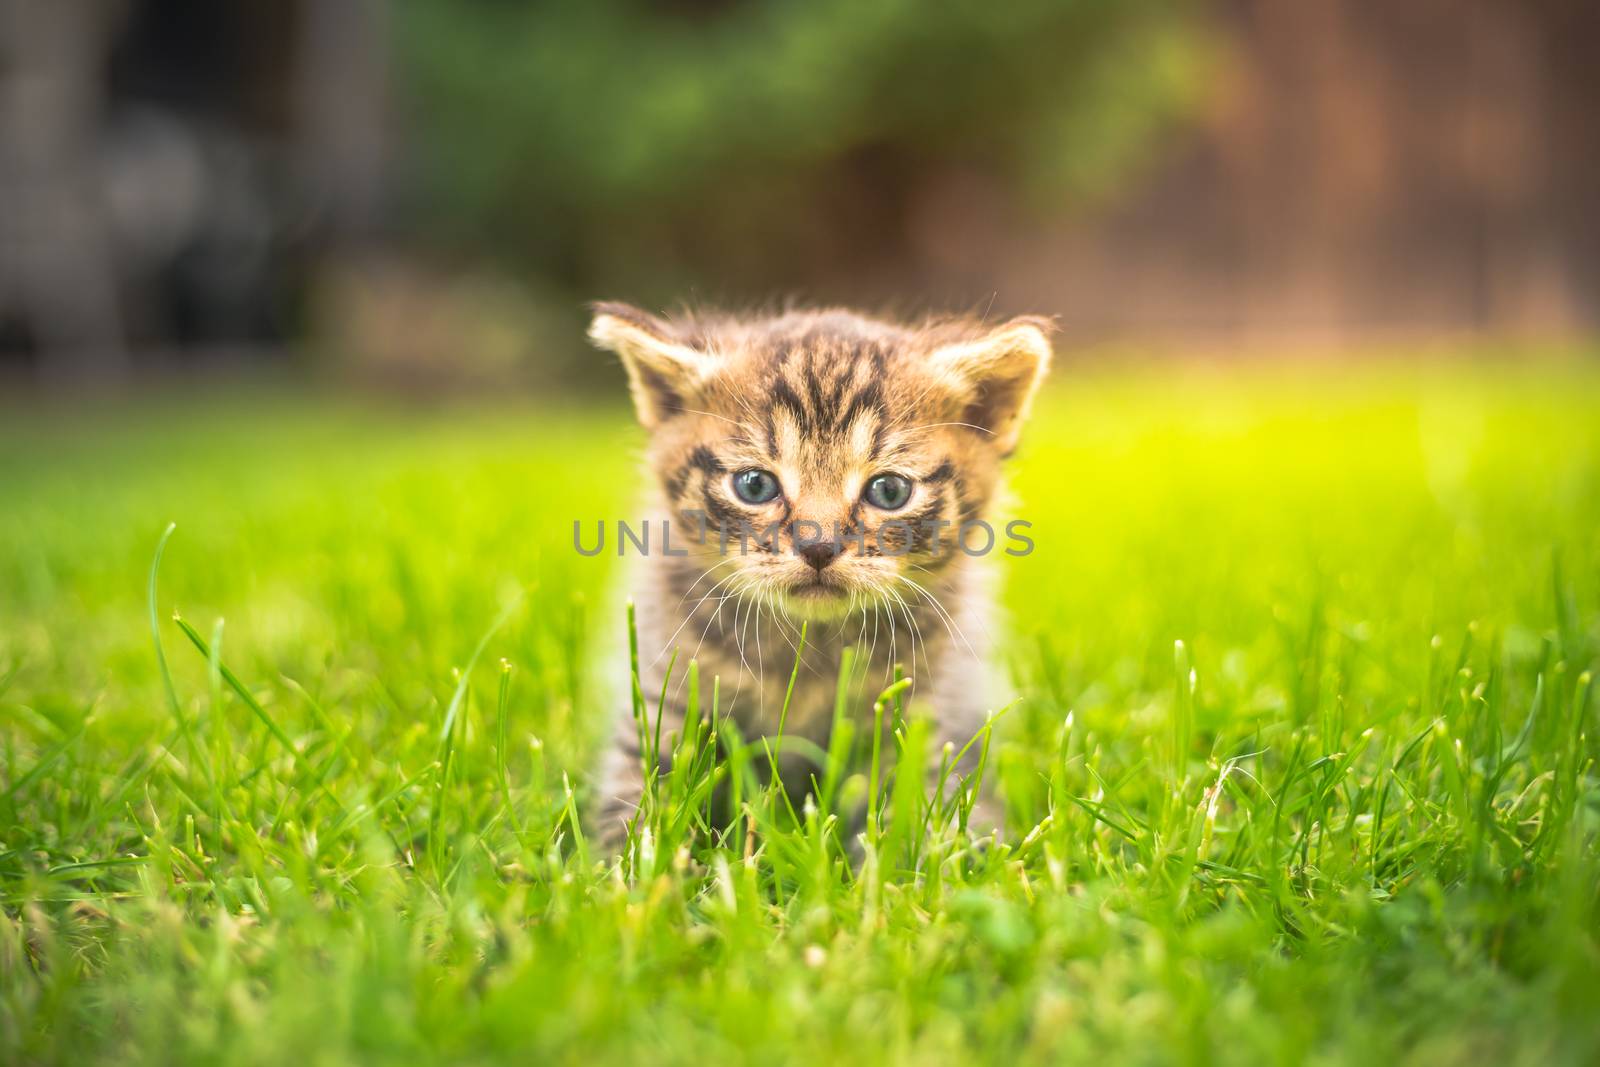 Cute Kitten in the garden in the grass by petrsvoboda91